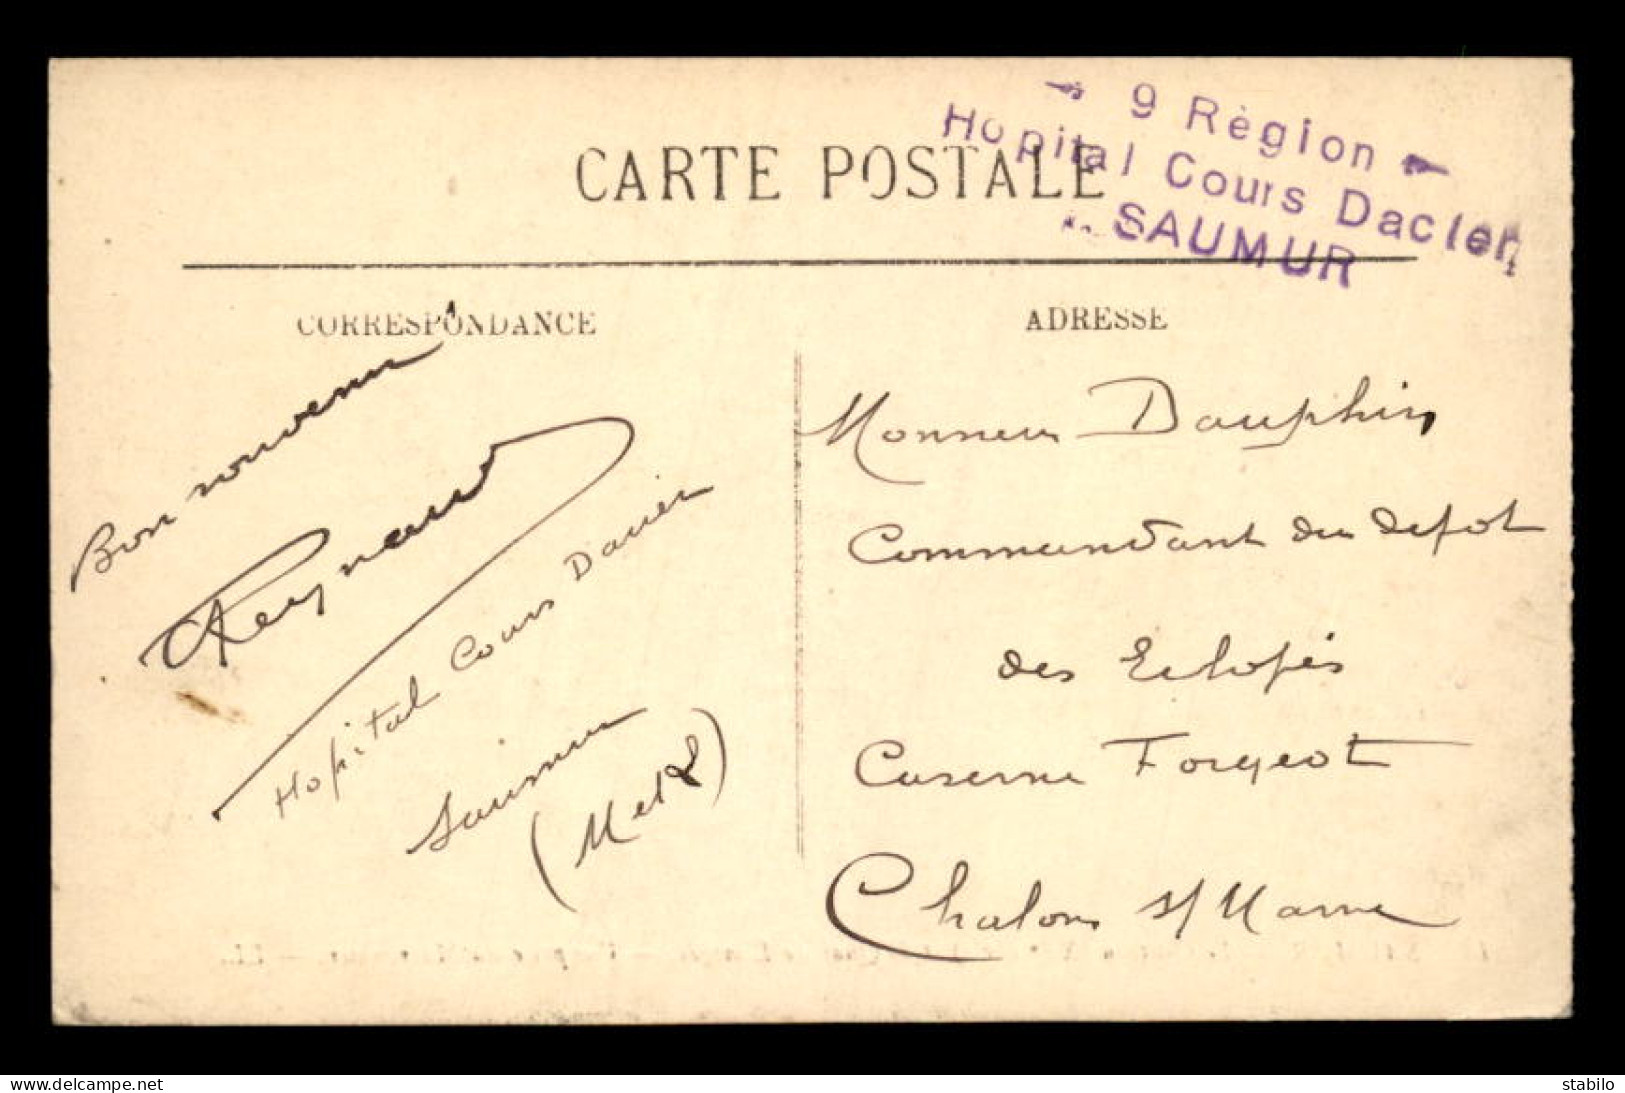 CACHET HOPITAL COURS DACIER - 9E REGION - SAUMUR (MAINE ET LOIRE) - Guerre De 1914-18